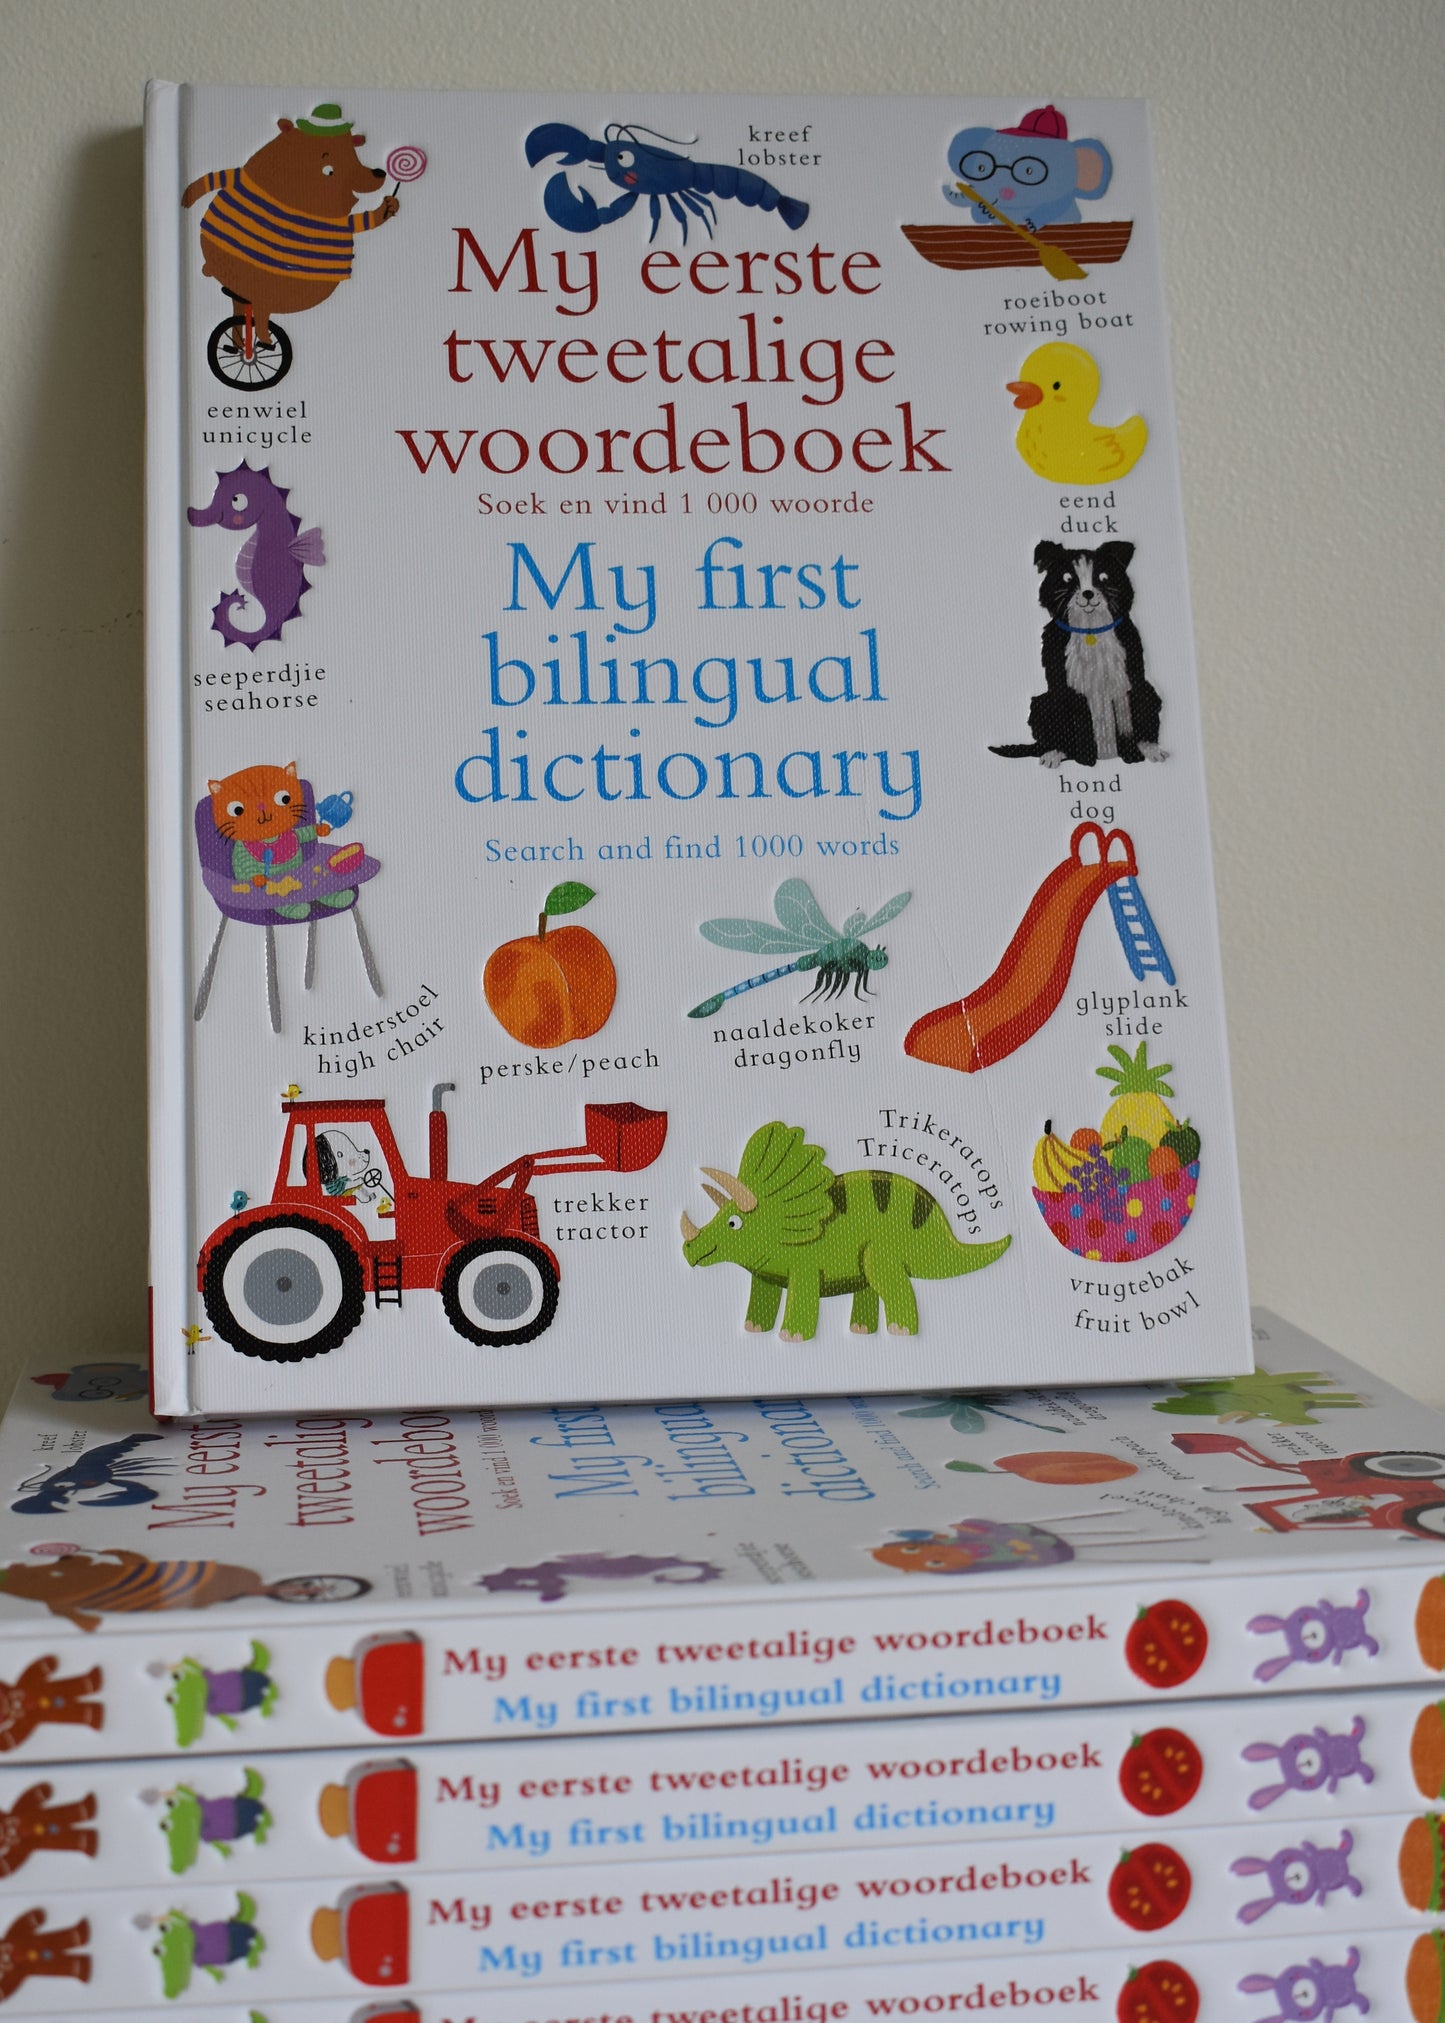 My eerste tweetalige woordeboek / My first bilingual dictionary